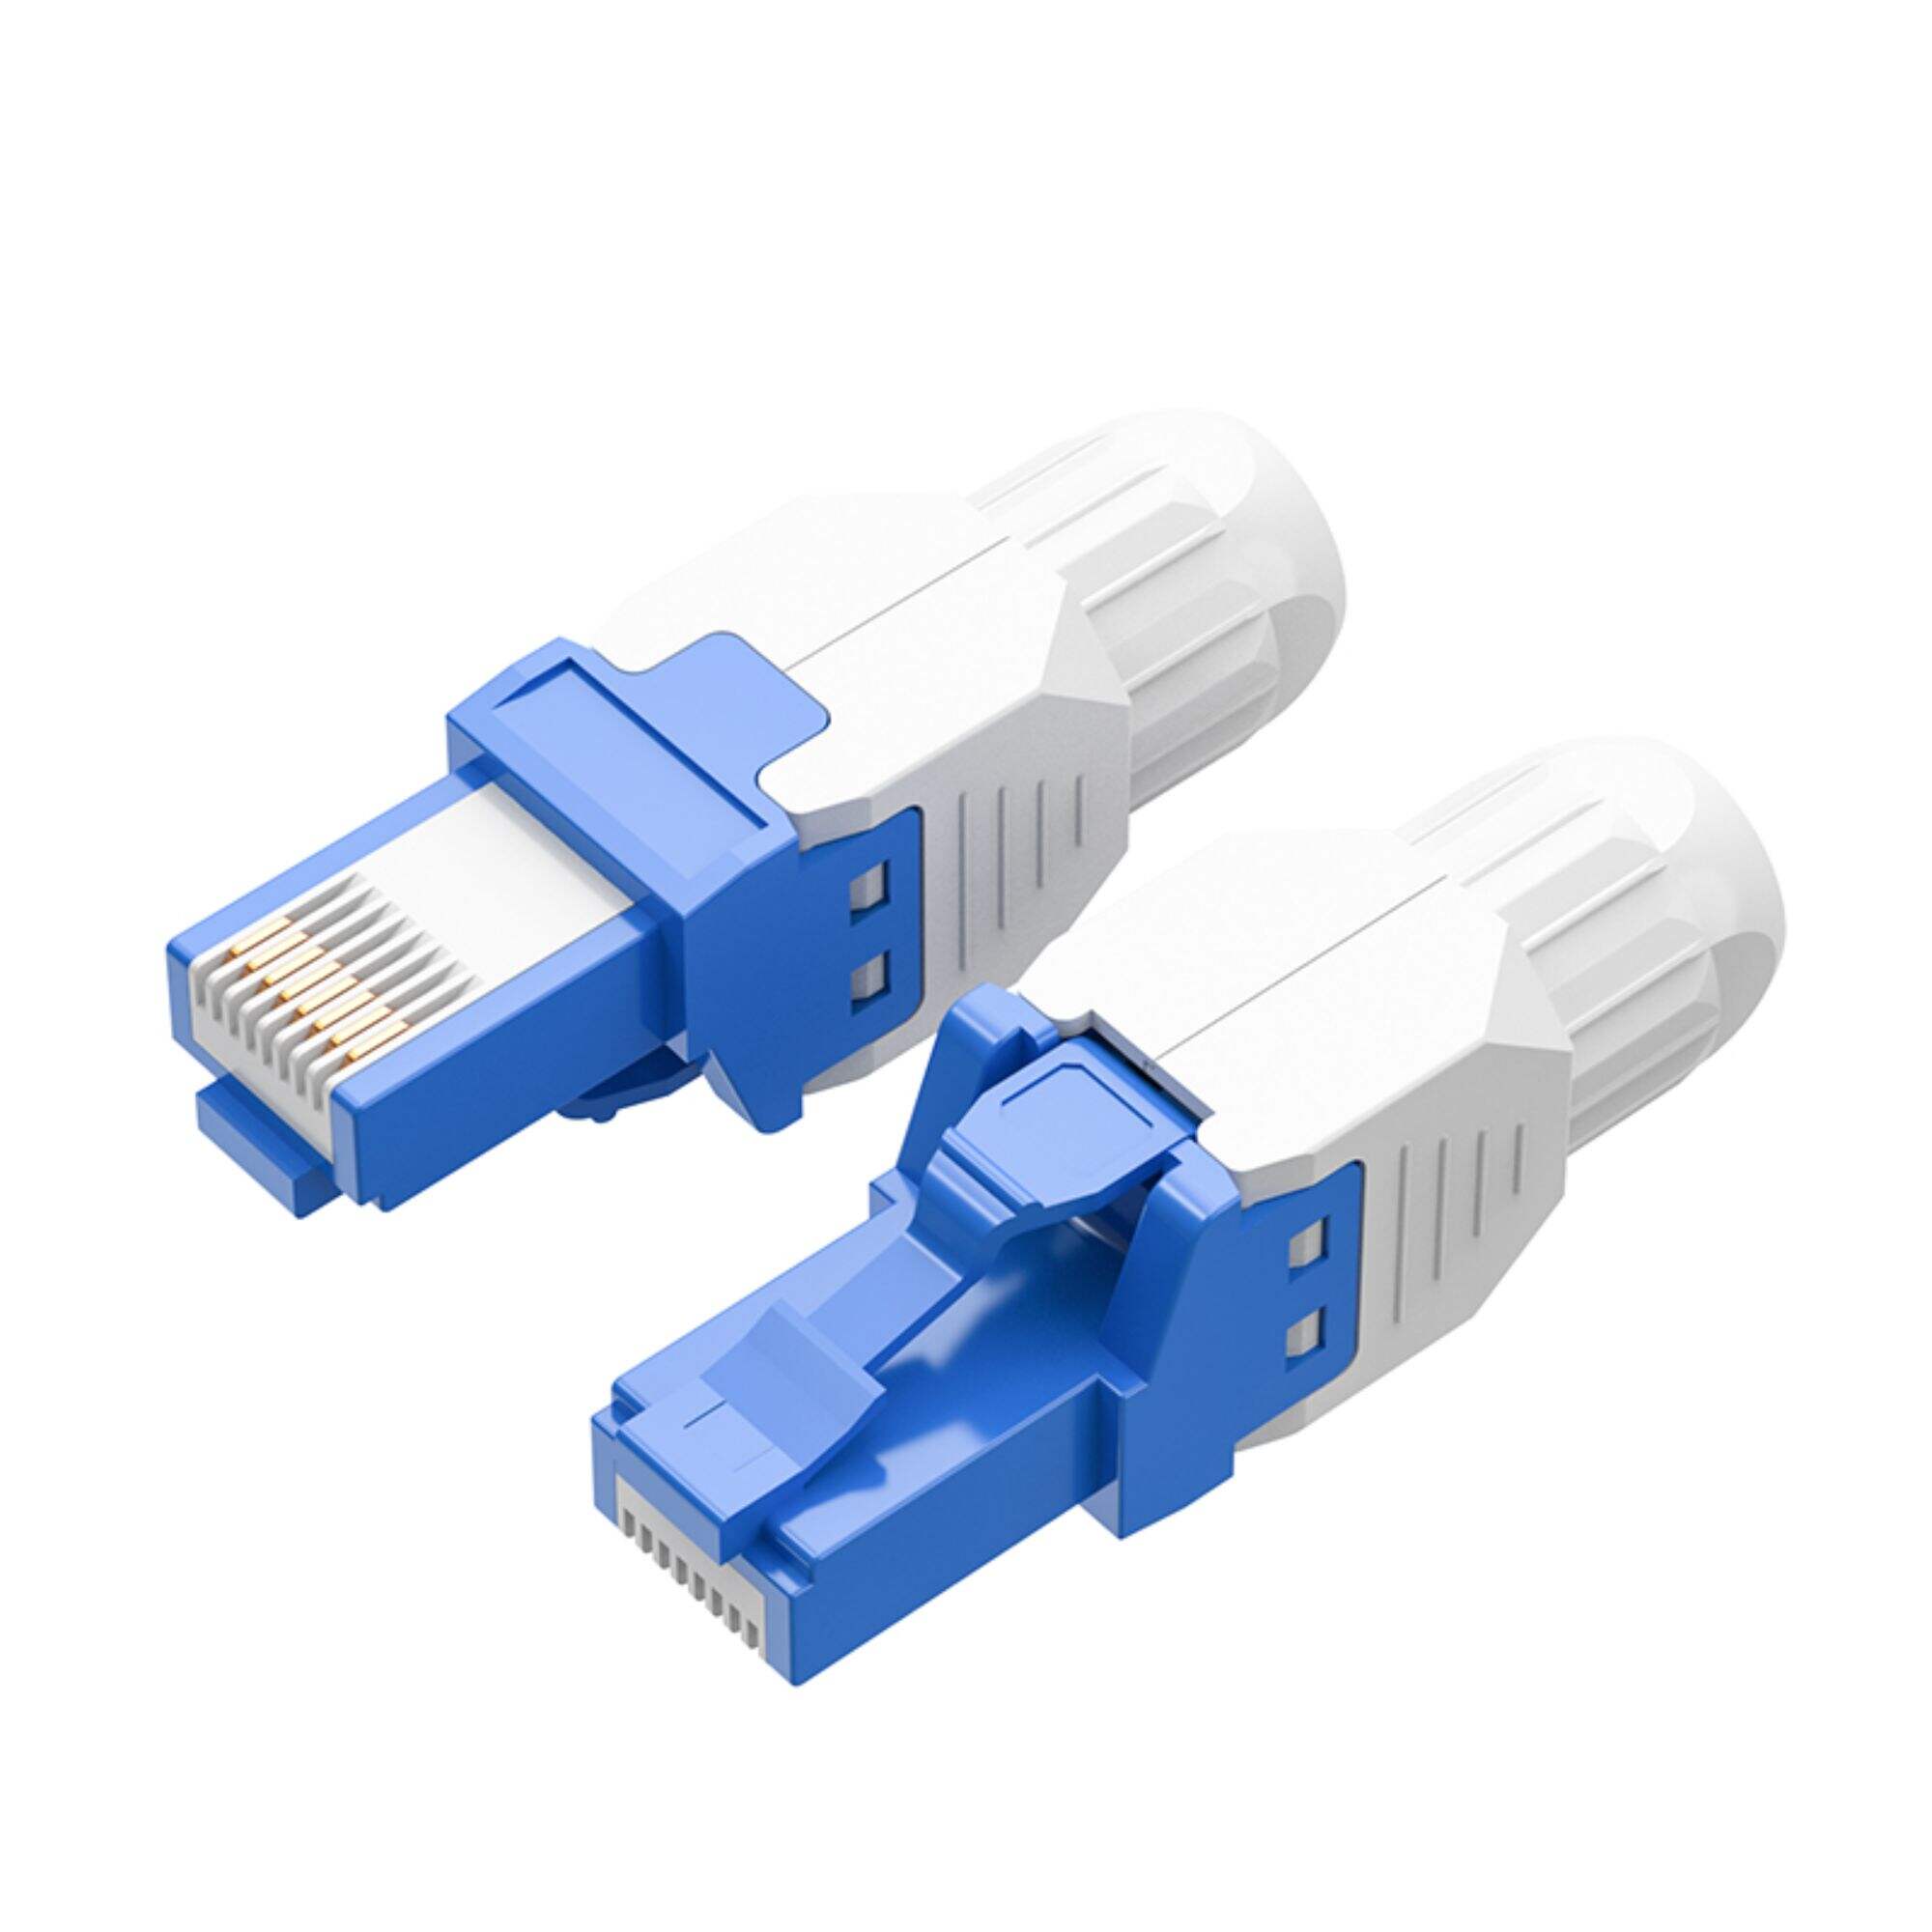 Cable Matters Conector de clavija de terminación sin blindaje Cat5e Cat6 Cat6a RJ45 sin herramientas Azul